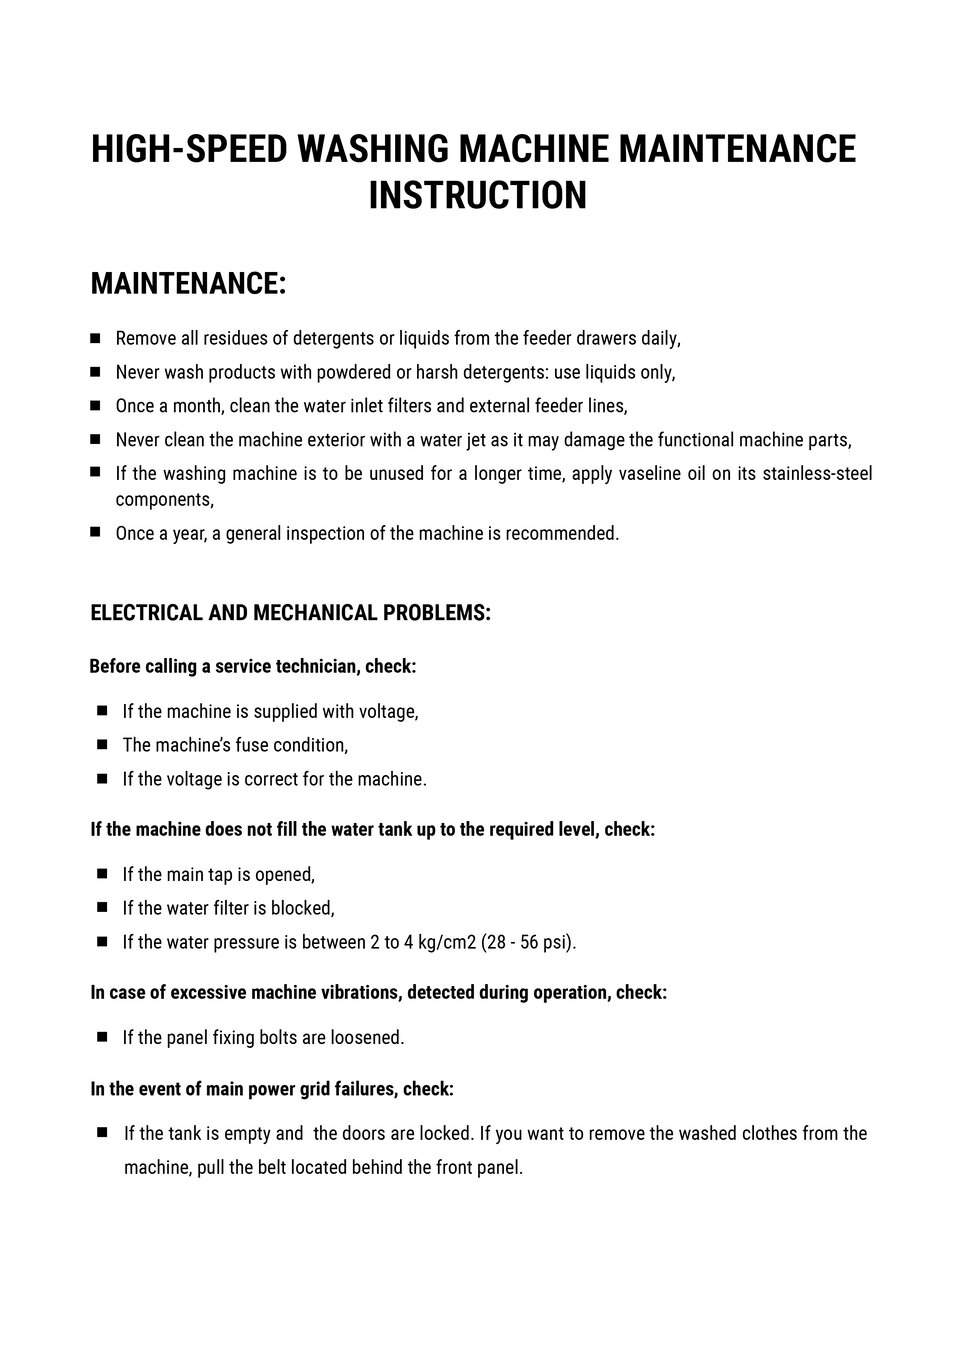 The image presents a document with high-speed washing machine maintenance instructions. Grafika przedstawia dokument zawierający instrukcje odnośnie konserwacji pralnicy wysokoobrotowej.